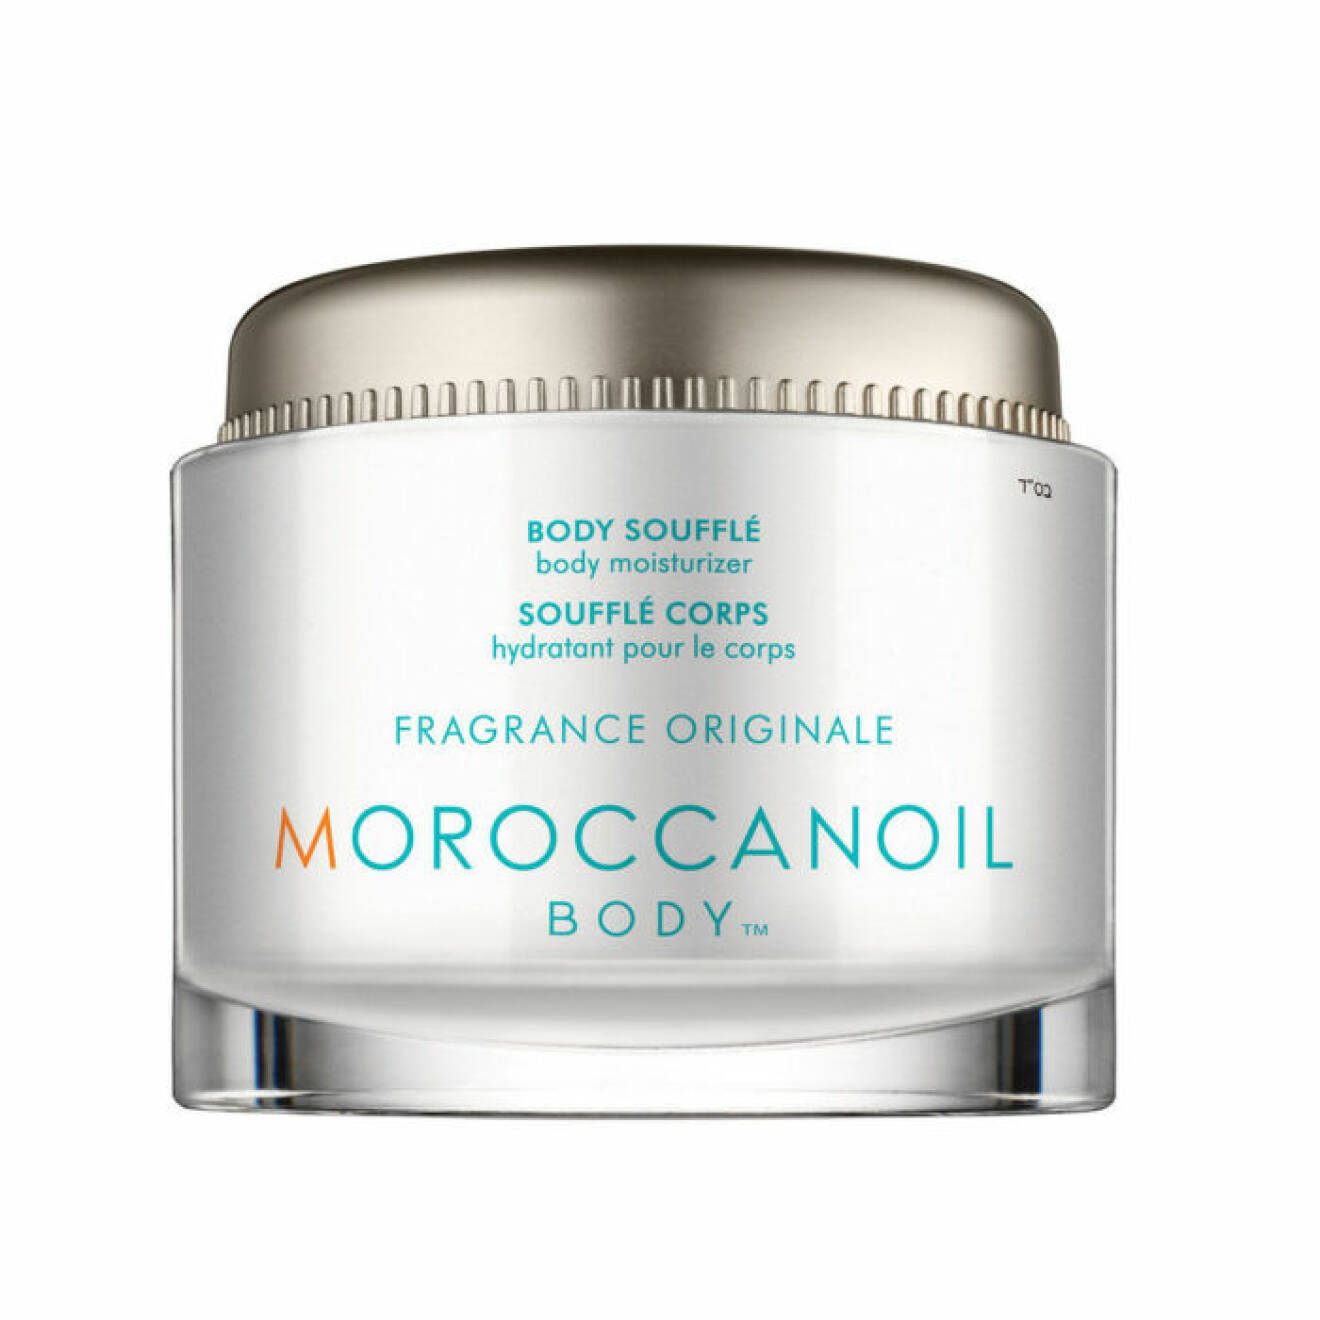 Maroccanoil body lotion